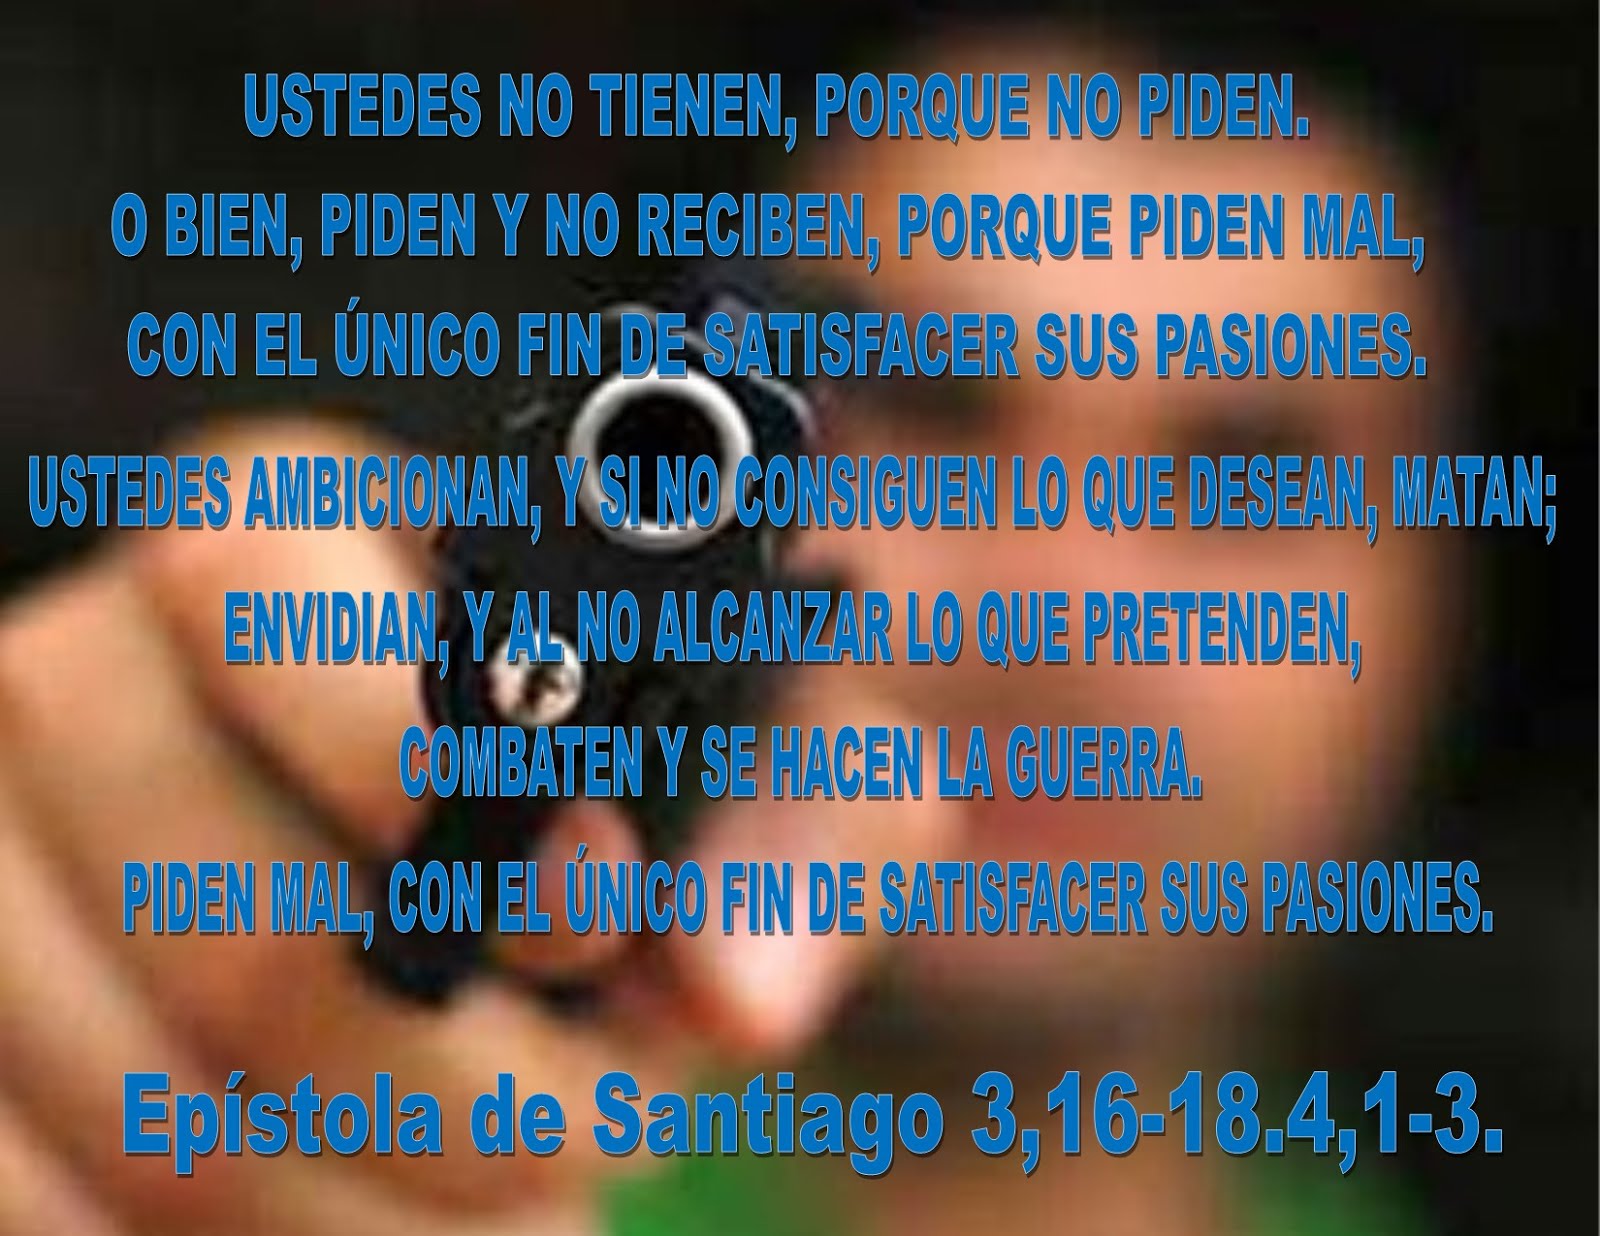 Epístola de Santiago 3,16-18.4,1-3.